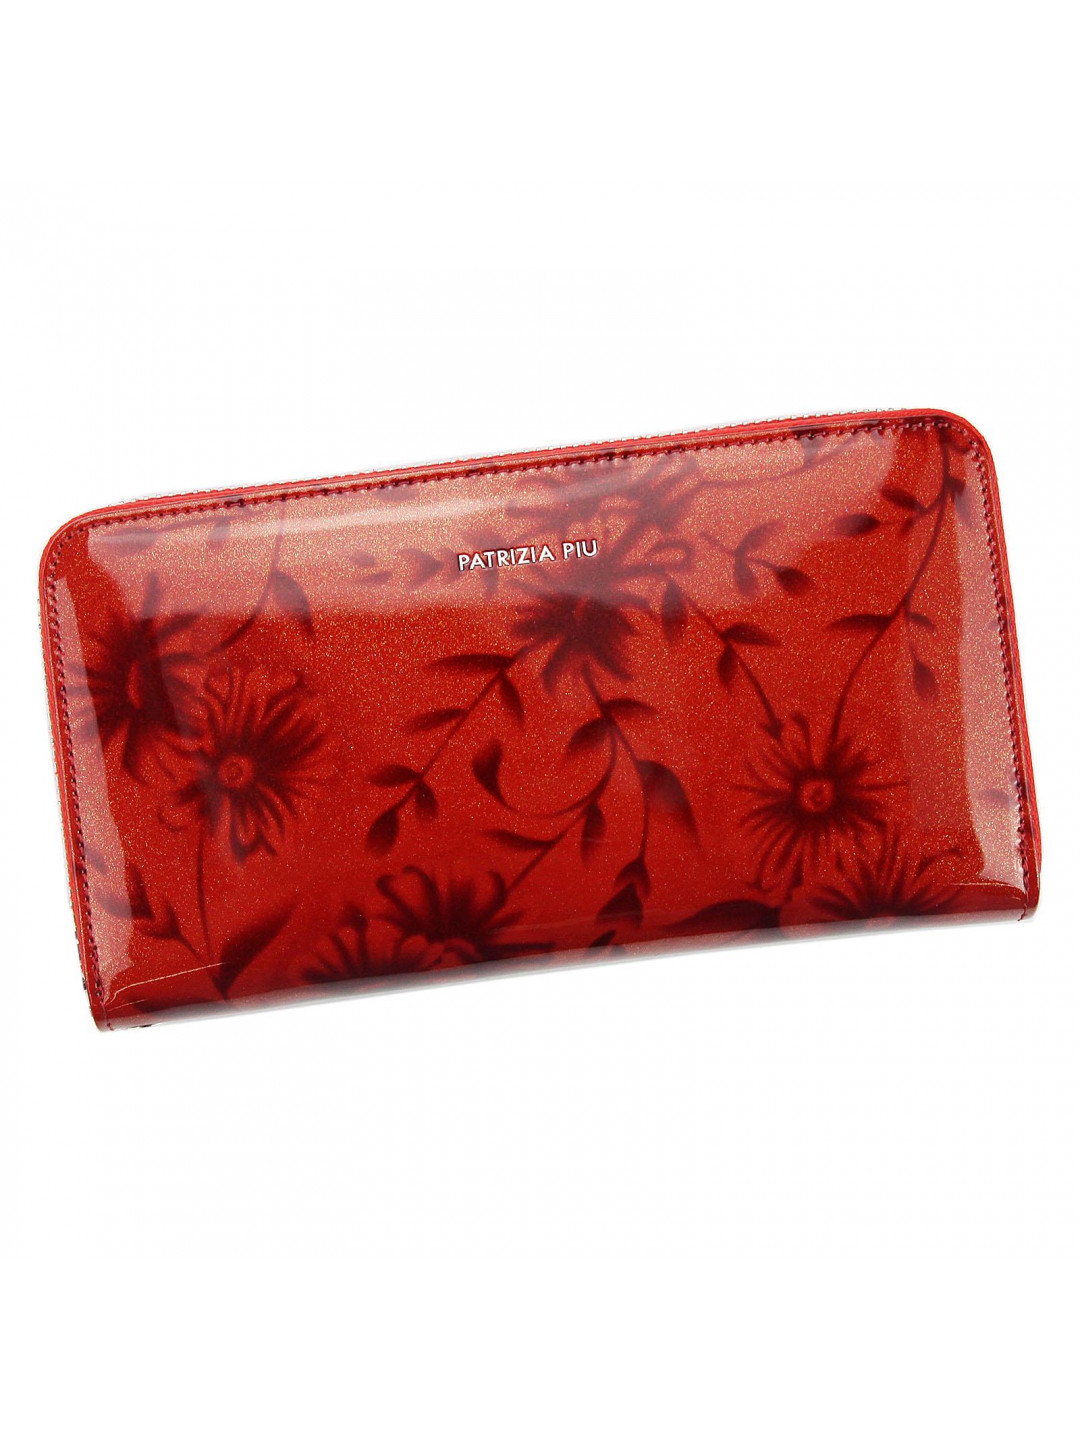 Luxusní dámská kožená peněženka Esma flower červená